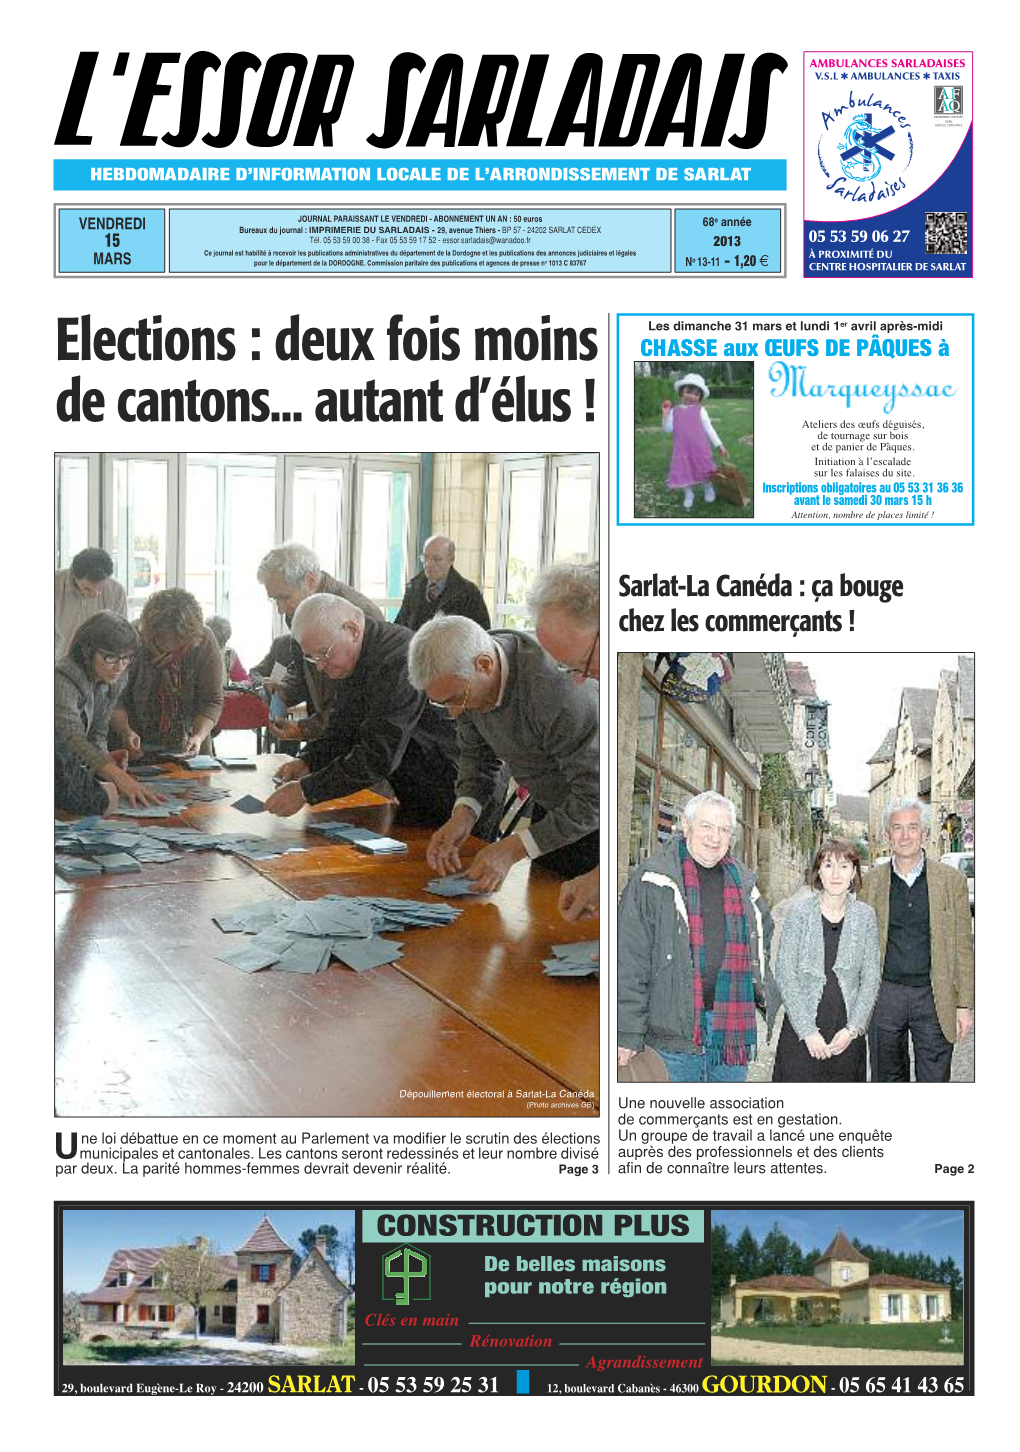 Elections : Deux Fois Moins De Cantons... Autant D'élus !